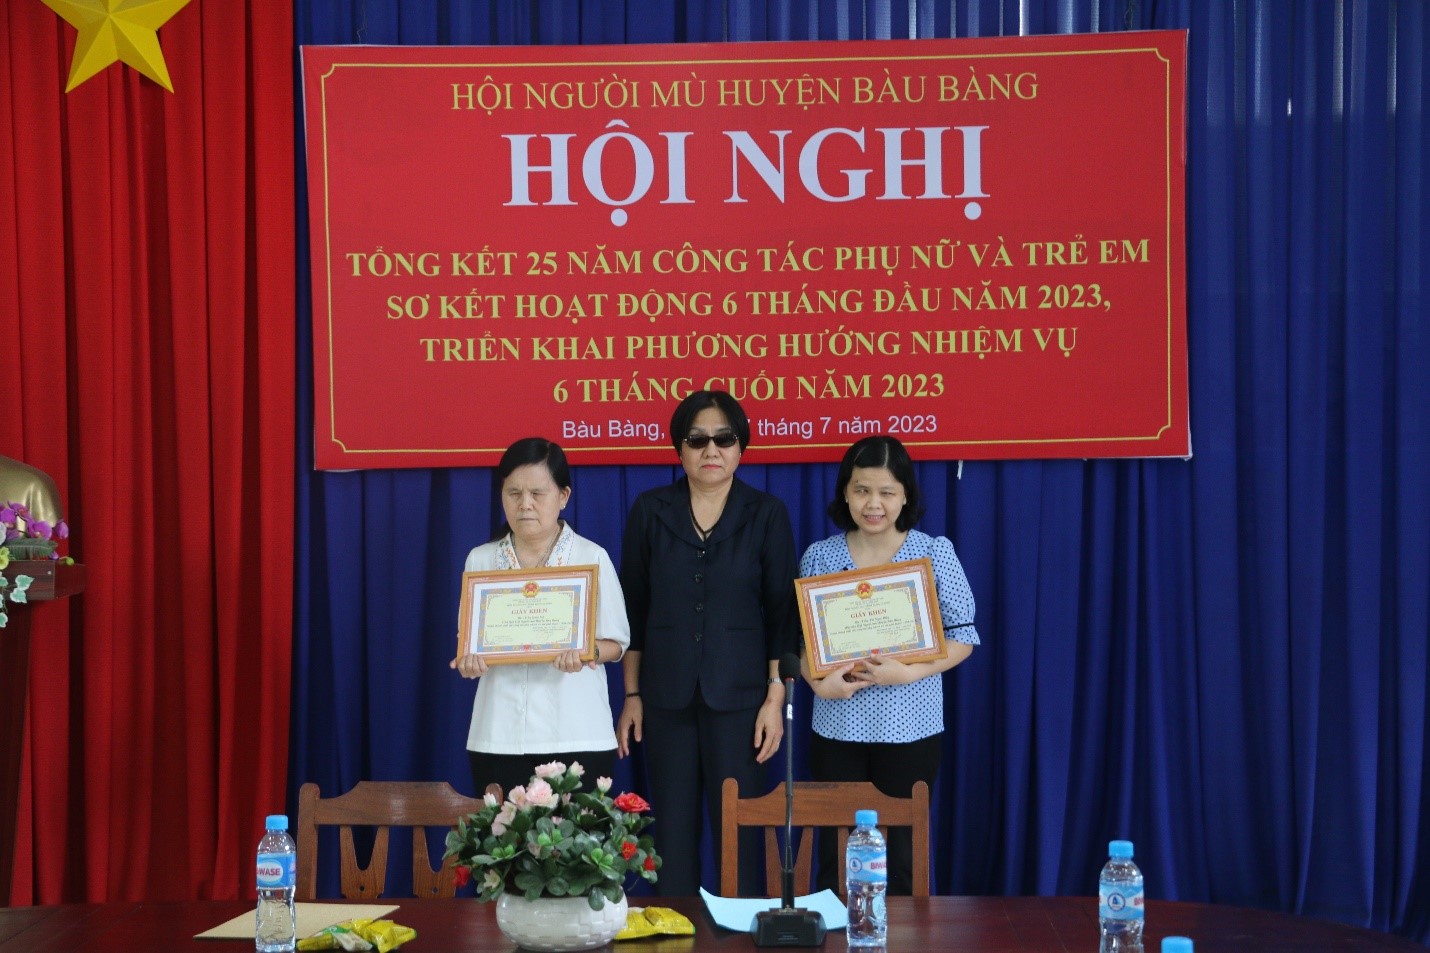 Hội người mù huyện Bàu Bàng tổ chức Hội Nghị tổng kết 25 năm công tác phụ nữ và trẻ em và sơ kết hoạt động 6 tháng đầu năm 2023, triển khai phương phướng, nhiệm vụ 6 tháng cuối năm 2023.